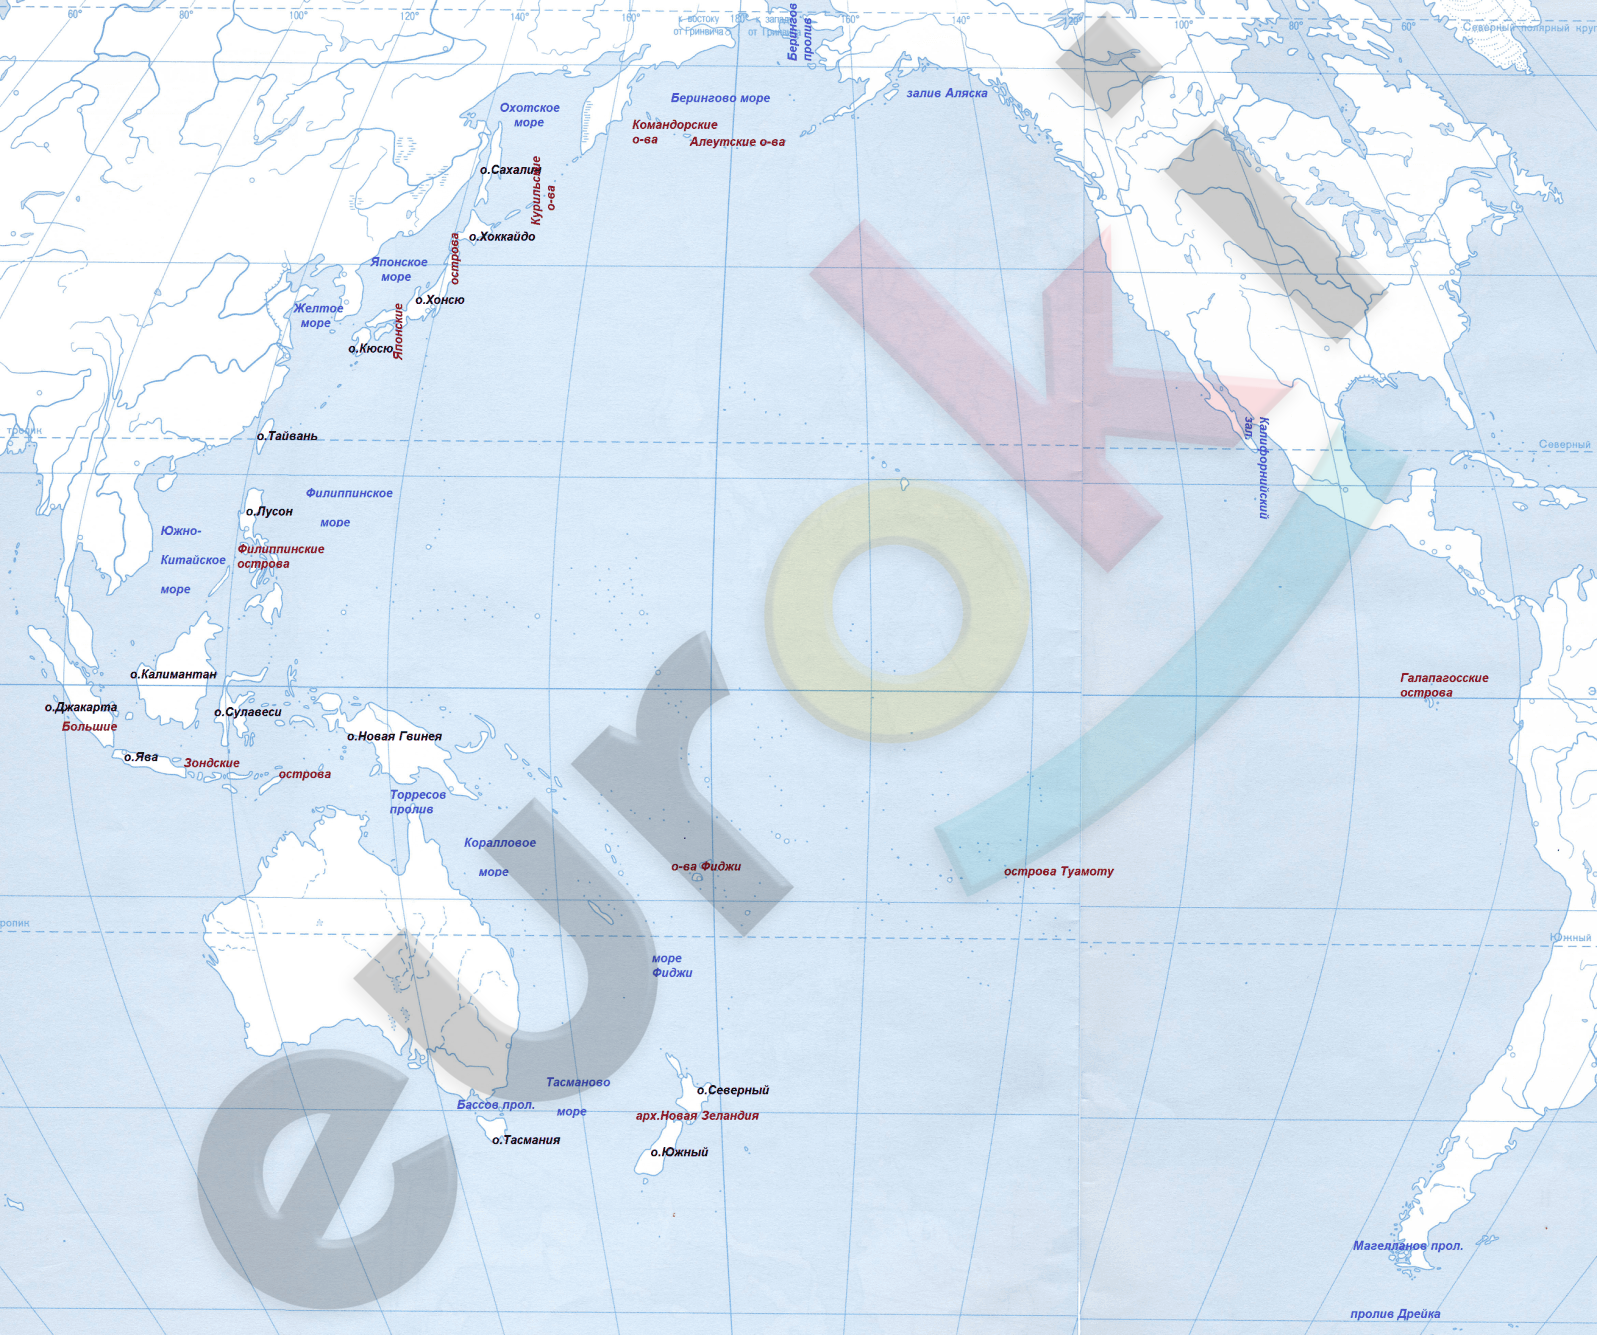 Острова тихого океана список на карте. Карта Тихого океана с морями заливами и проливами. Проливы Тихого океана на карте. Государства имеют выход к тихому океану. Крупные острова и архипелаги Тихого океана.